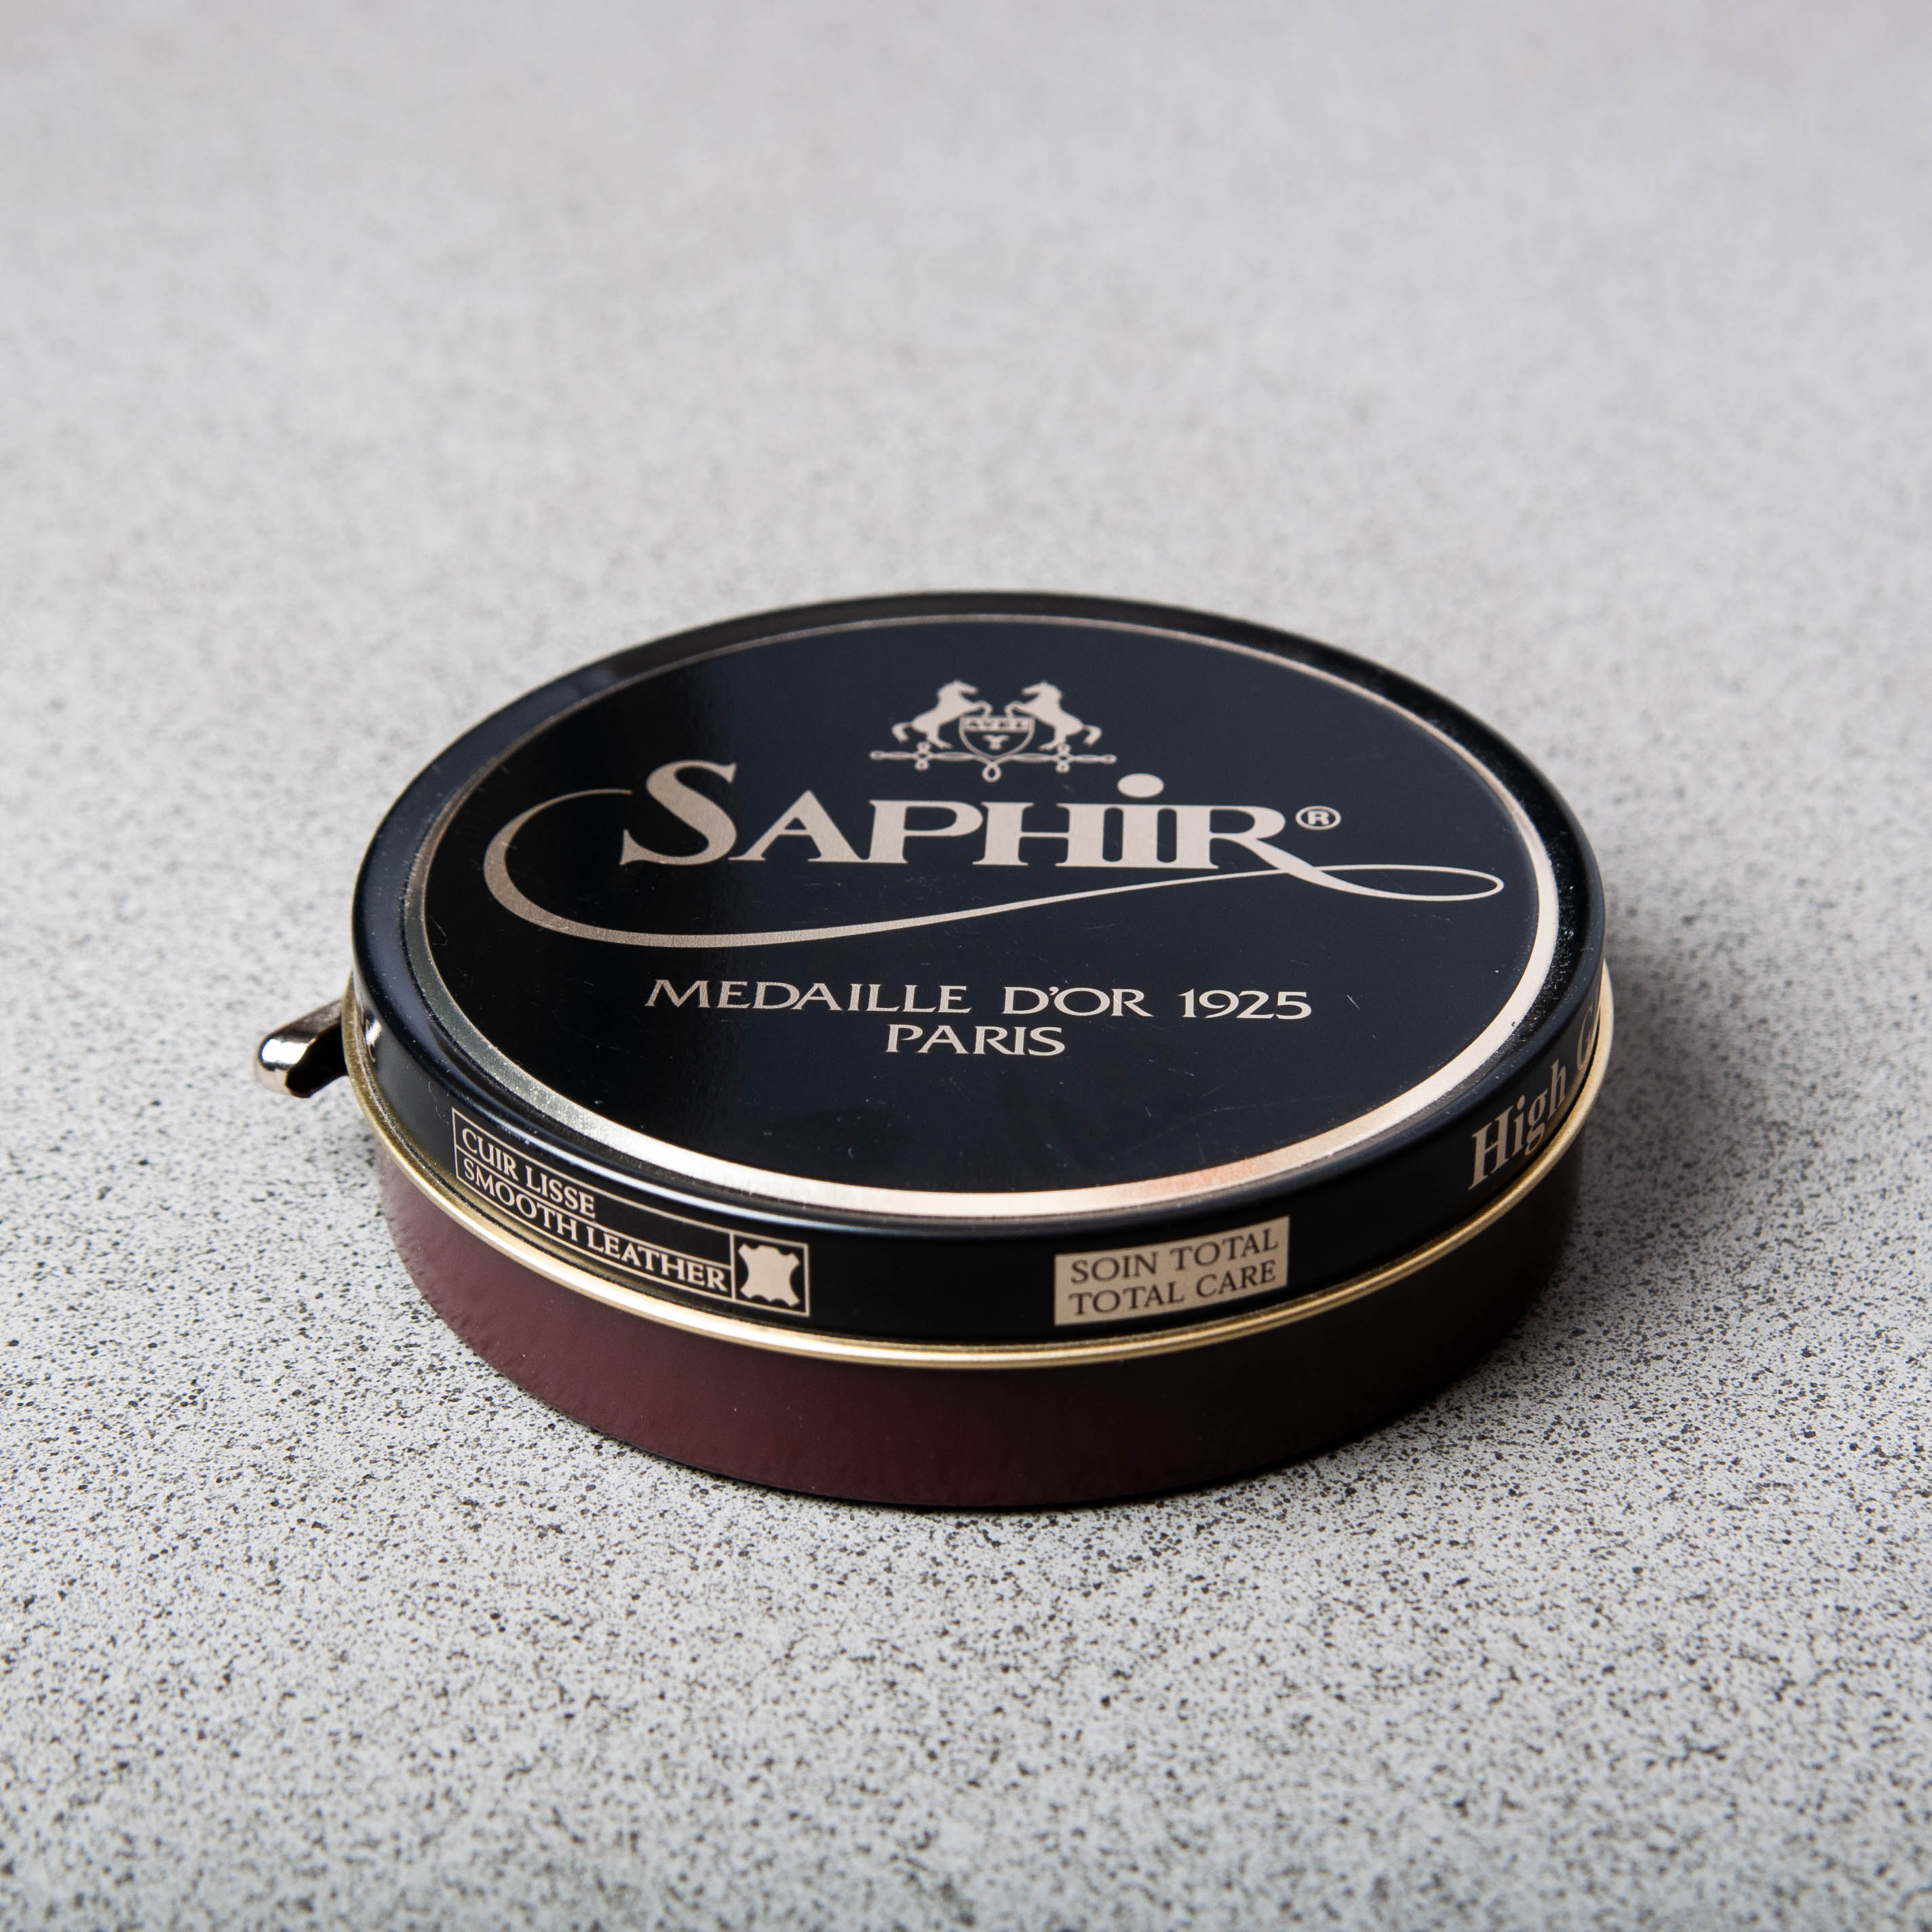 Saphir ™ Pâte de Luxe (50 ML) - Shoe wax several colors